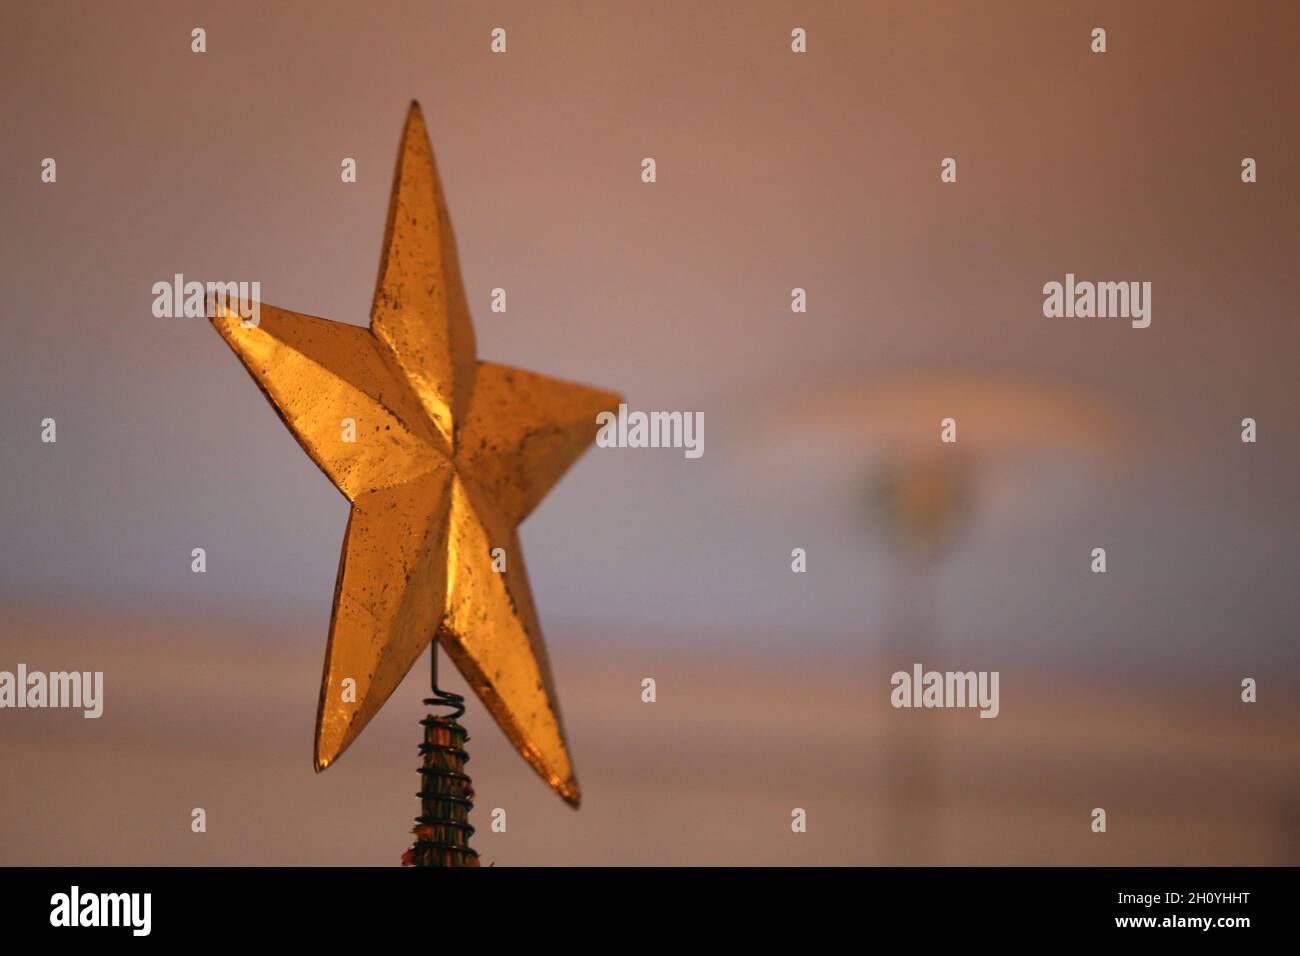 Primo piano di un'enorme stella dorata come un topper dell'albero di Natale con alcuni rami superiori dell'albero. Luce calda e accogliente. Allegra e felice immagine a colori. Foto Stock